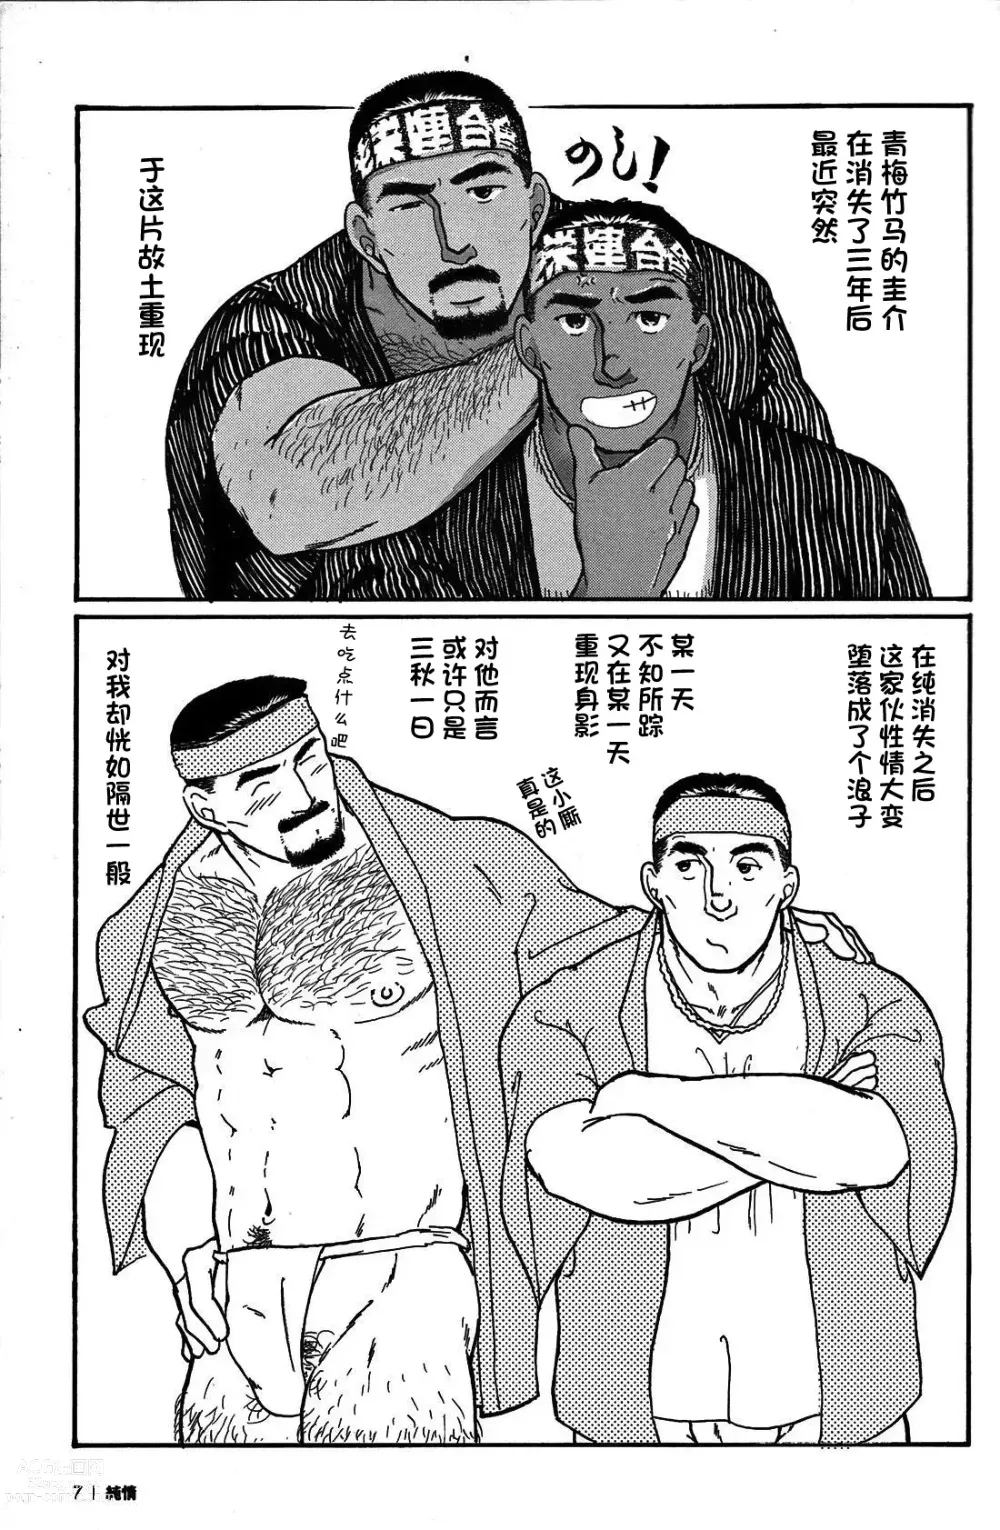 Page 6 of manga 纯情!! 第一章 「纯情」